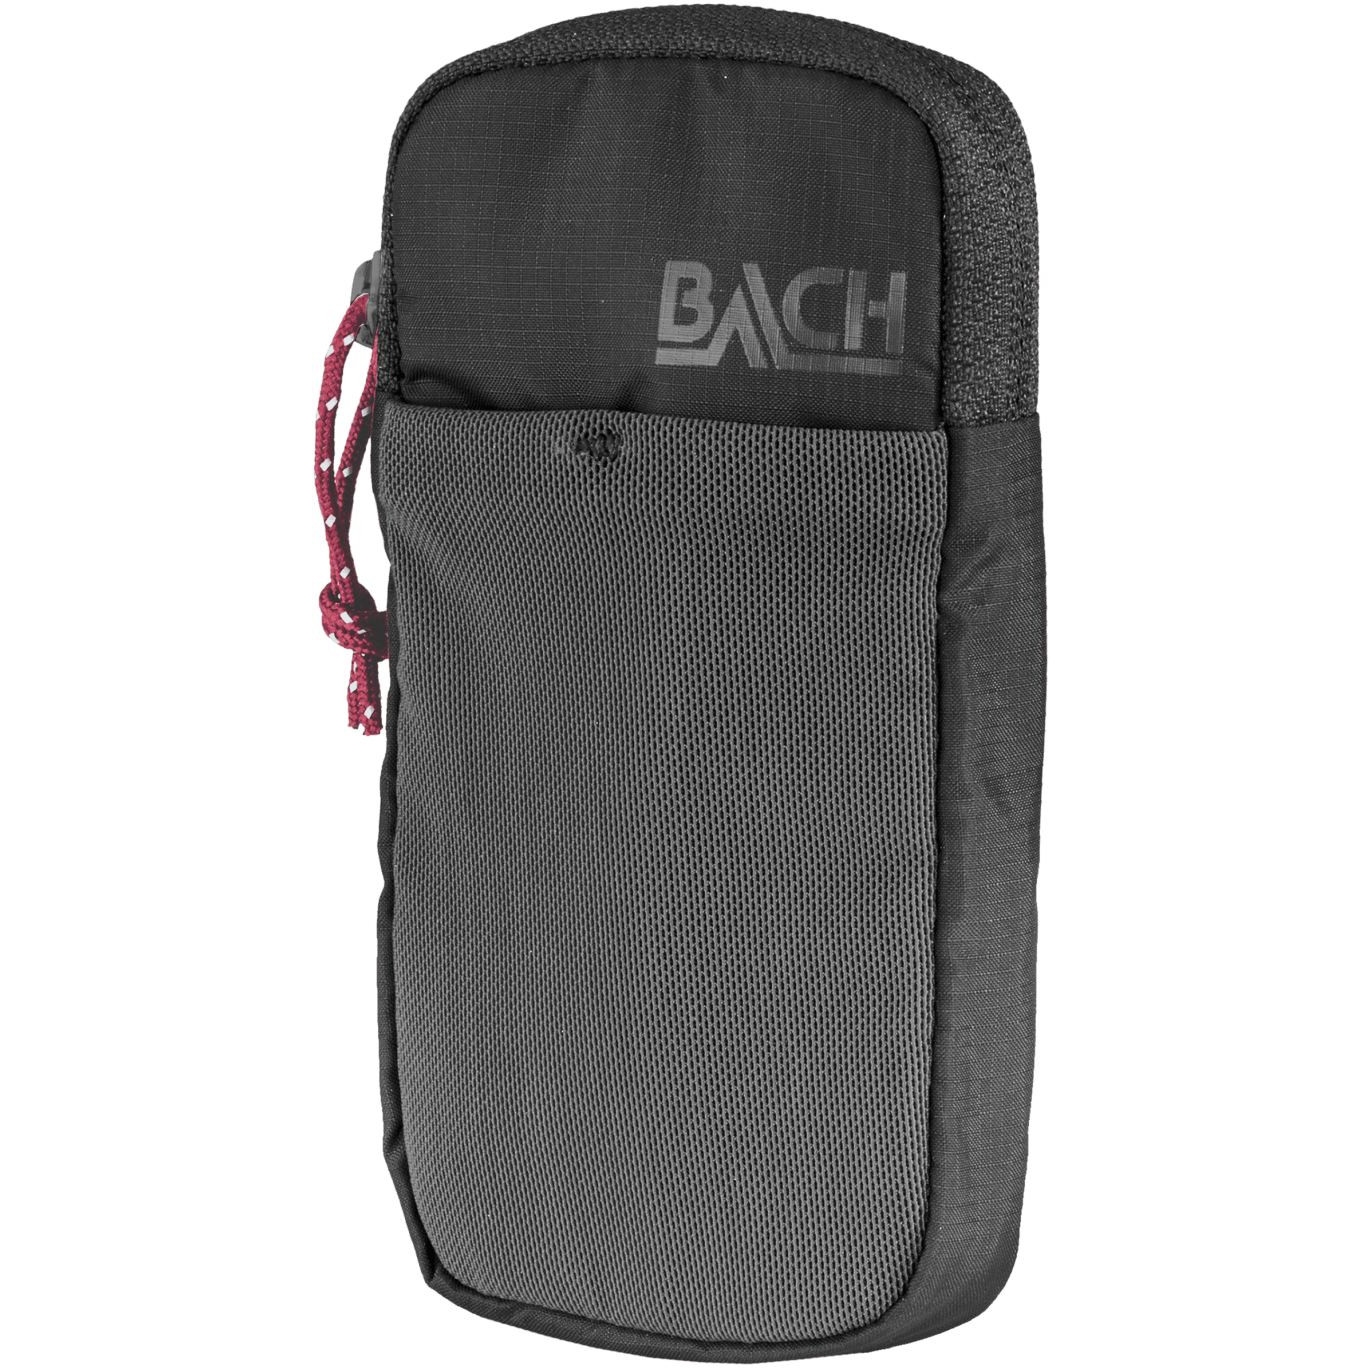 Produktbild von Bach Padded Shoulder Pocket M - Schultergurttasche - schwarz